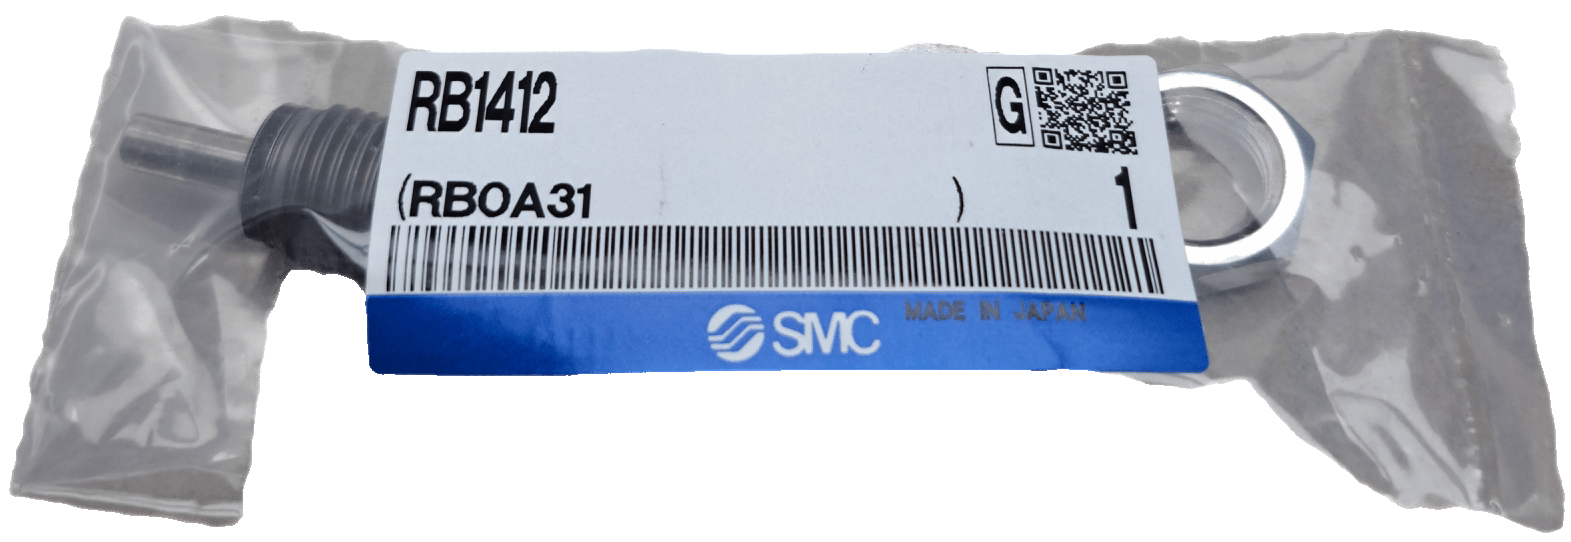 SMC RB1412 Stoßdämpfer - #product_category# | Klenk Maschinenhandel